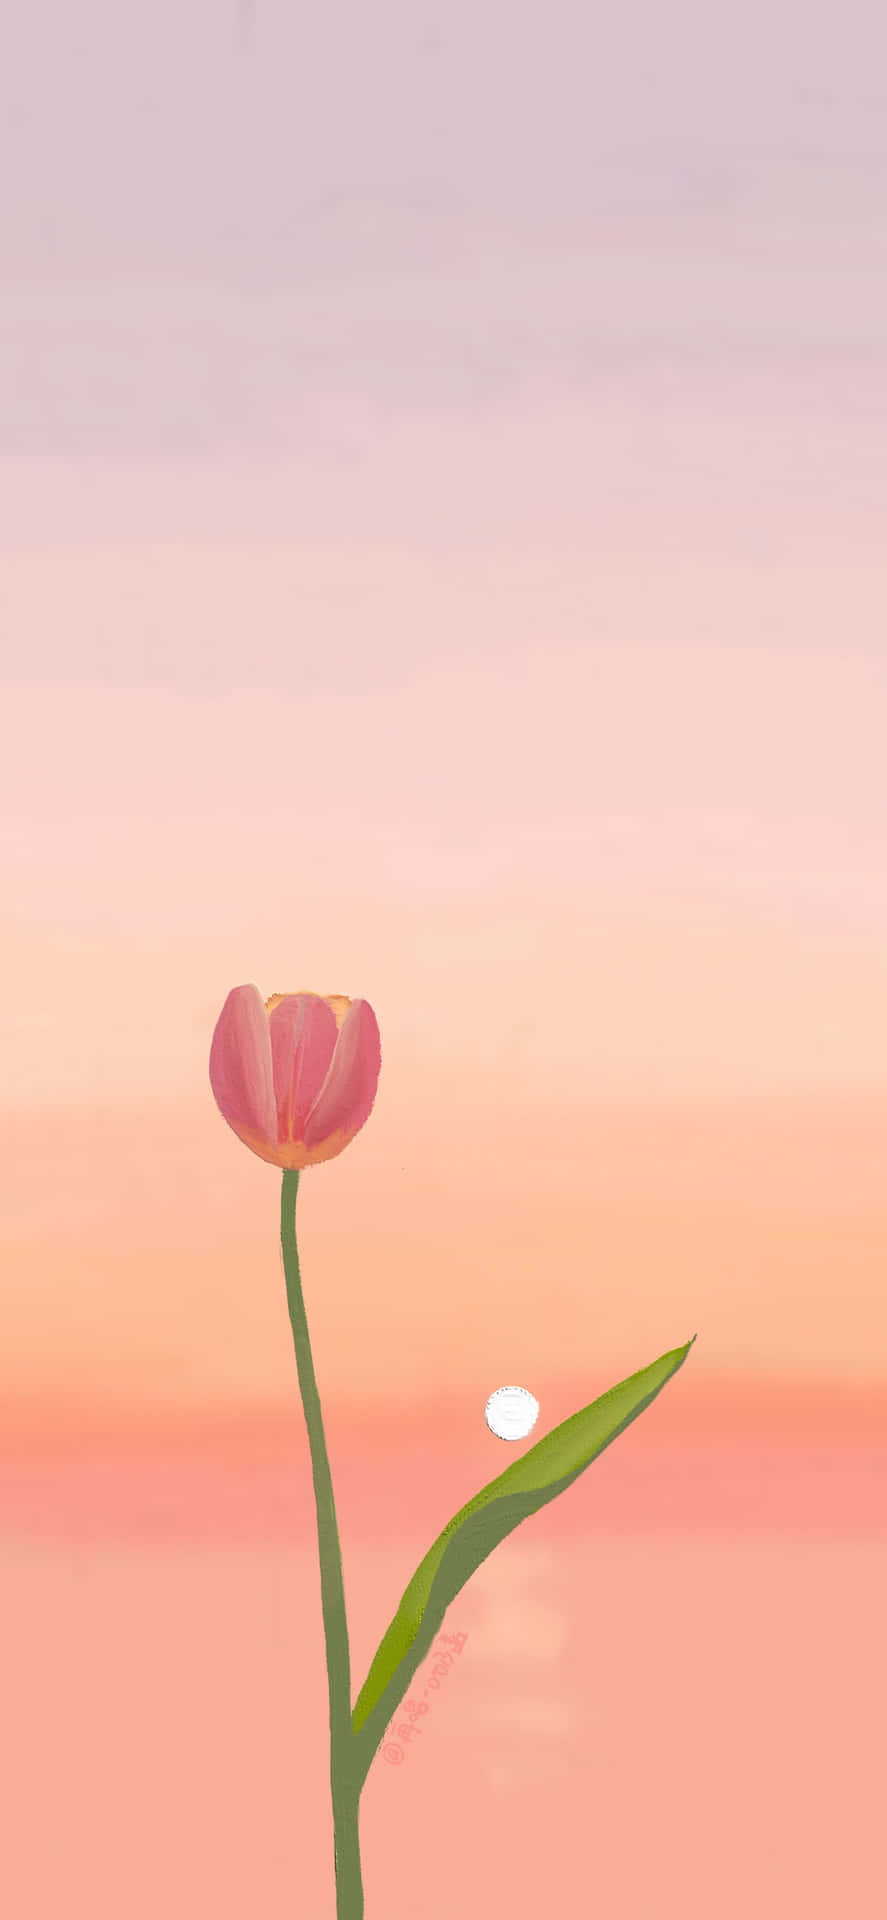 Hình nền hoa tulip cute cho điện thoại iOS